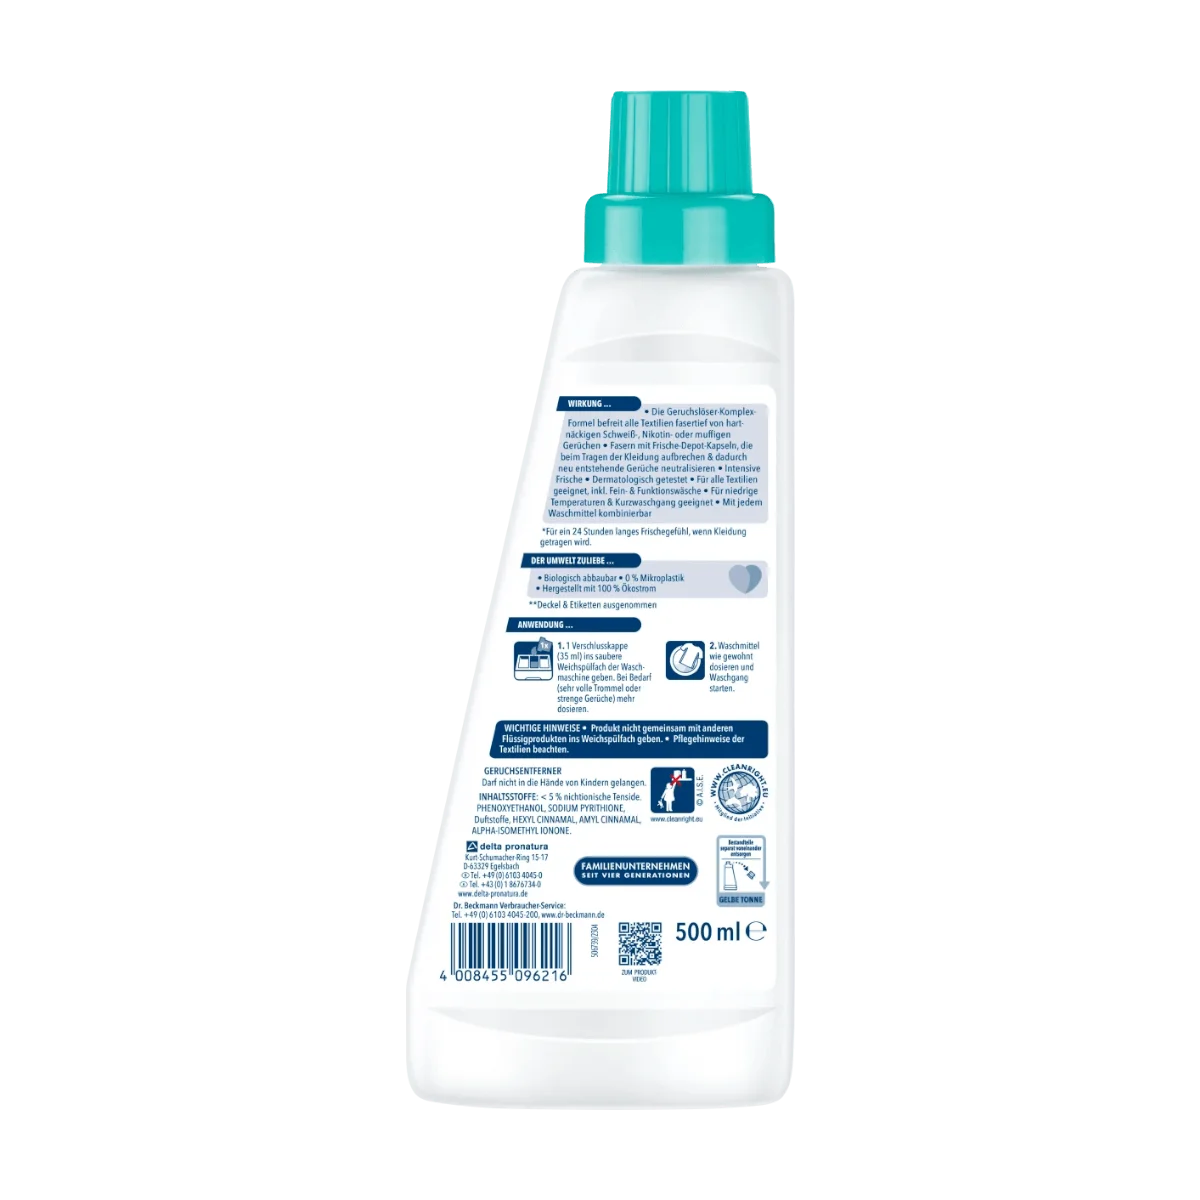 avantal Bio Geruchsentferner & Enzymreiniger Ready2Use Spezial 500ml  Sprühflasche - probiotische Wirkungsweise mit Bio-Mikroben (2) : :  Drogerie & Körperpflege